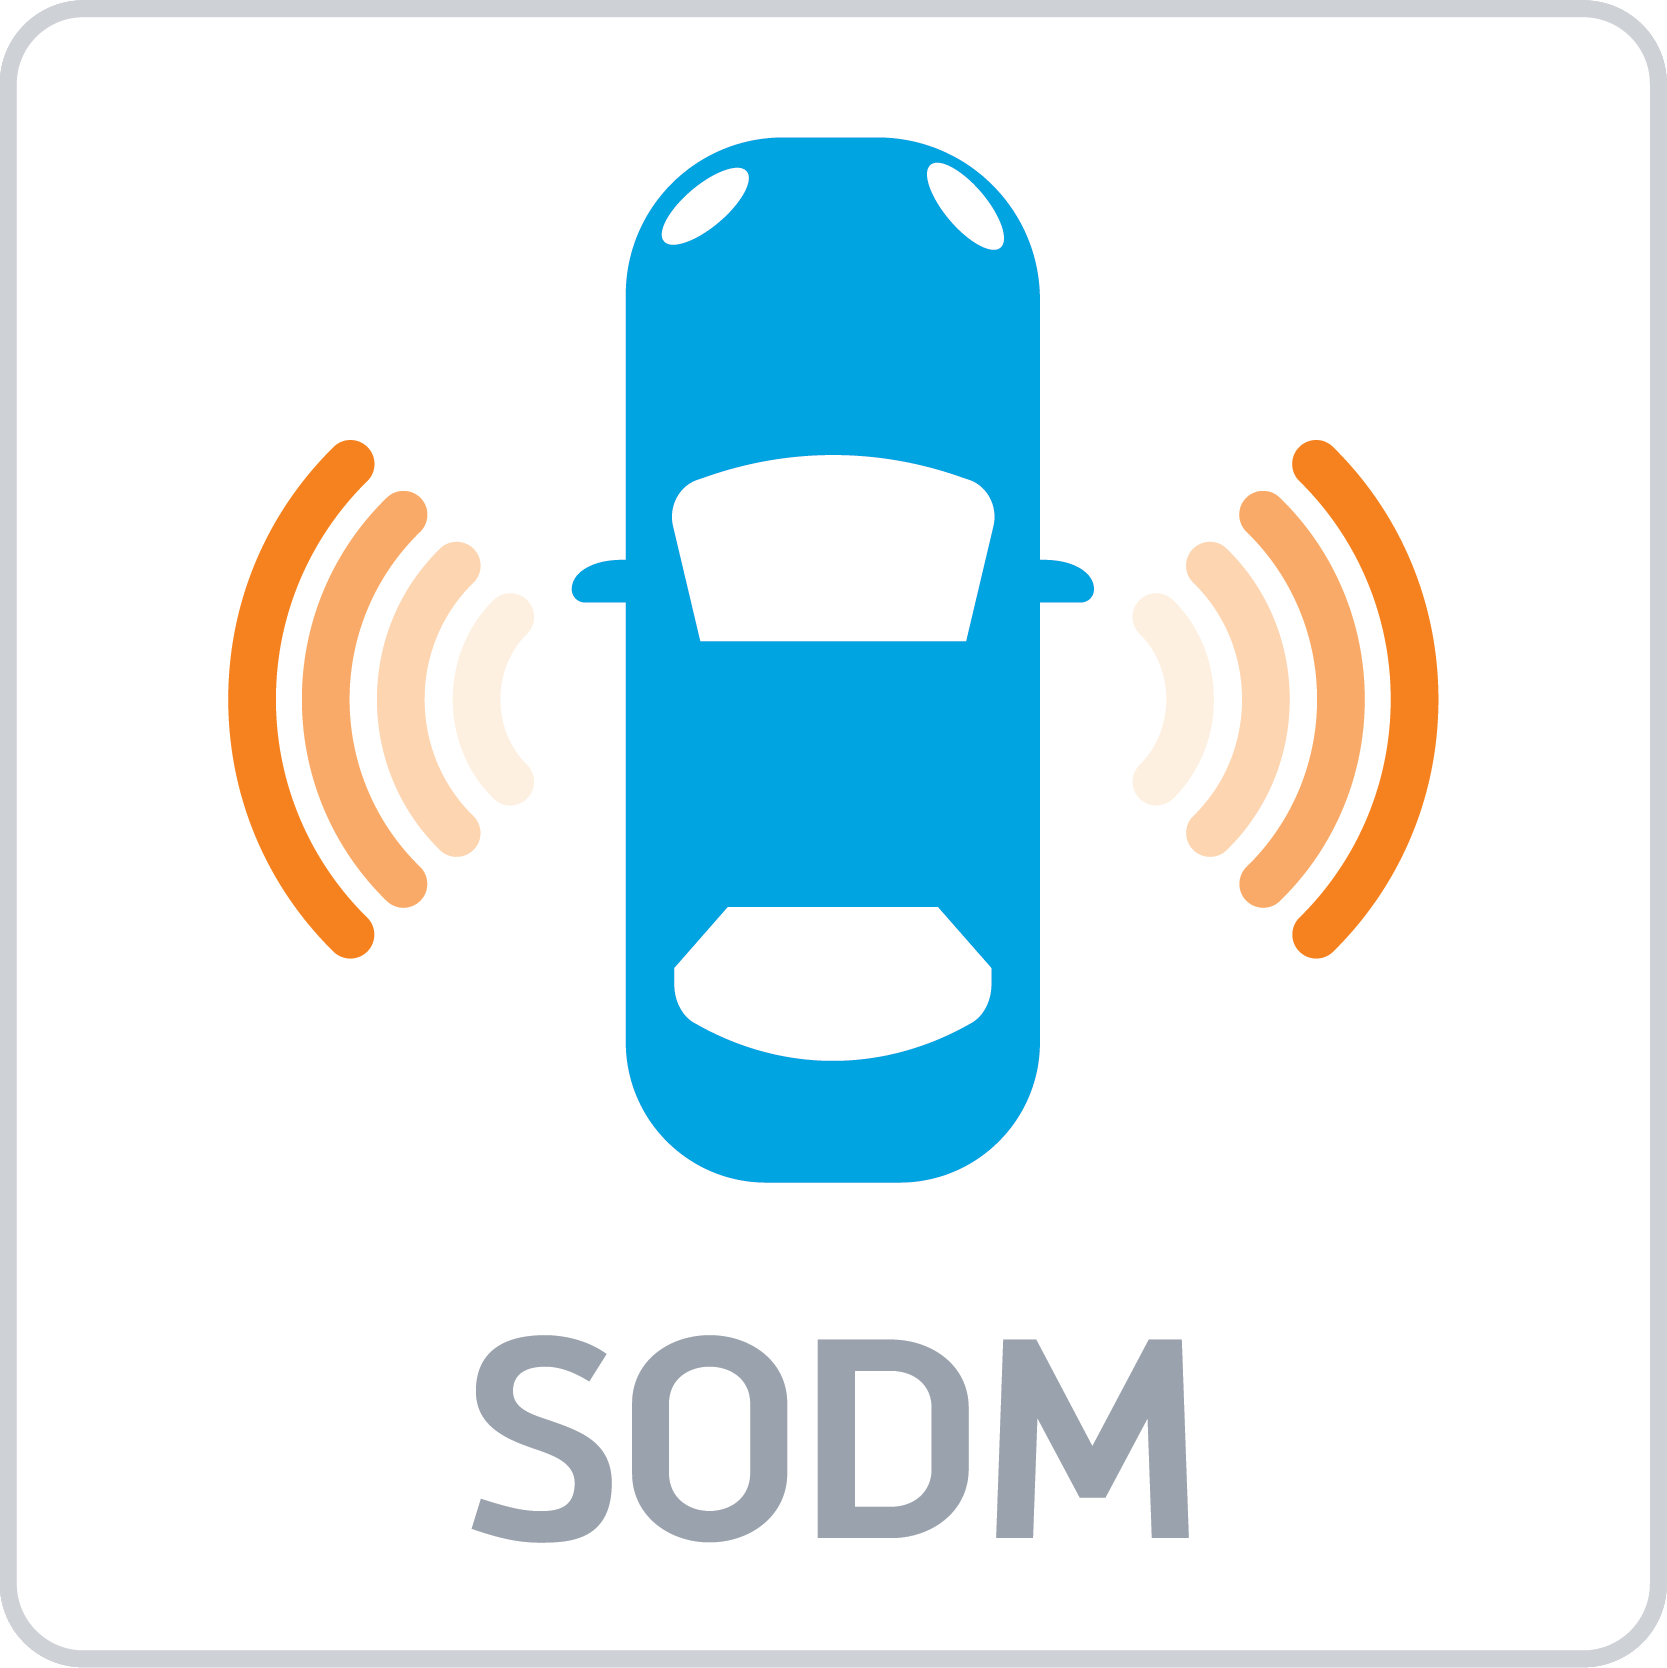 GM Side Object Detection Module (SODM)